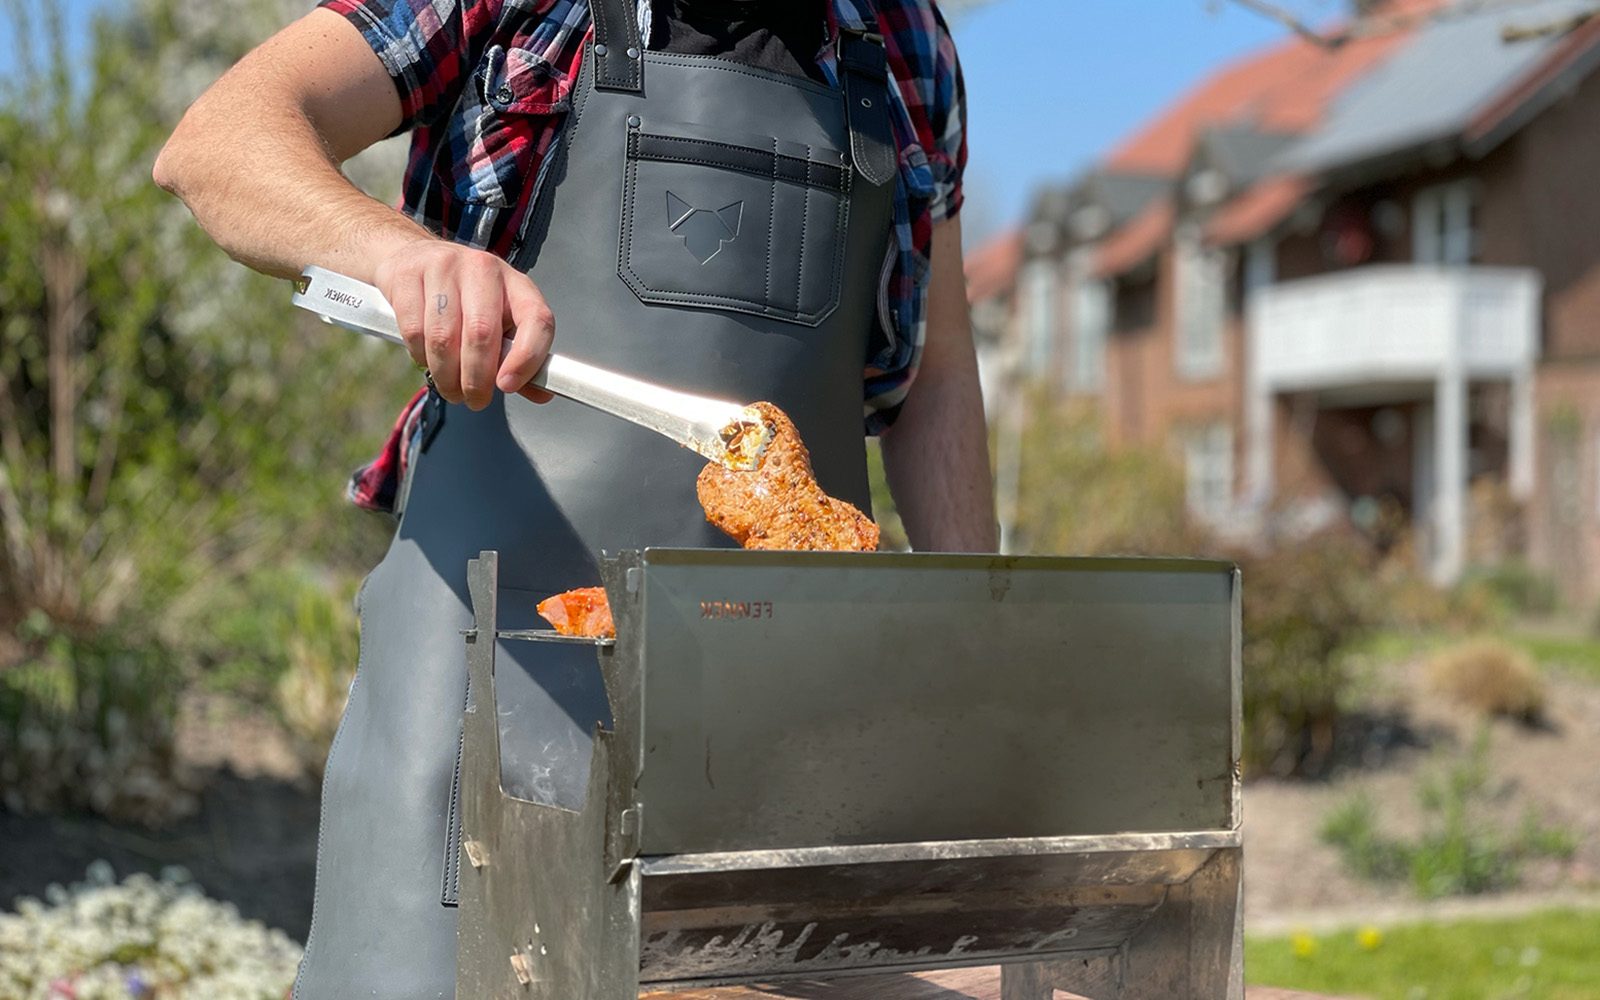 Grillschürze von einem Mann im Garten getragen im Einsatz an einem Holzkohlegrill, in der Hand eine Edelstahl-Grillzange die ein Stück Fleisch hält